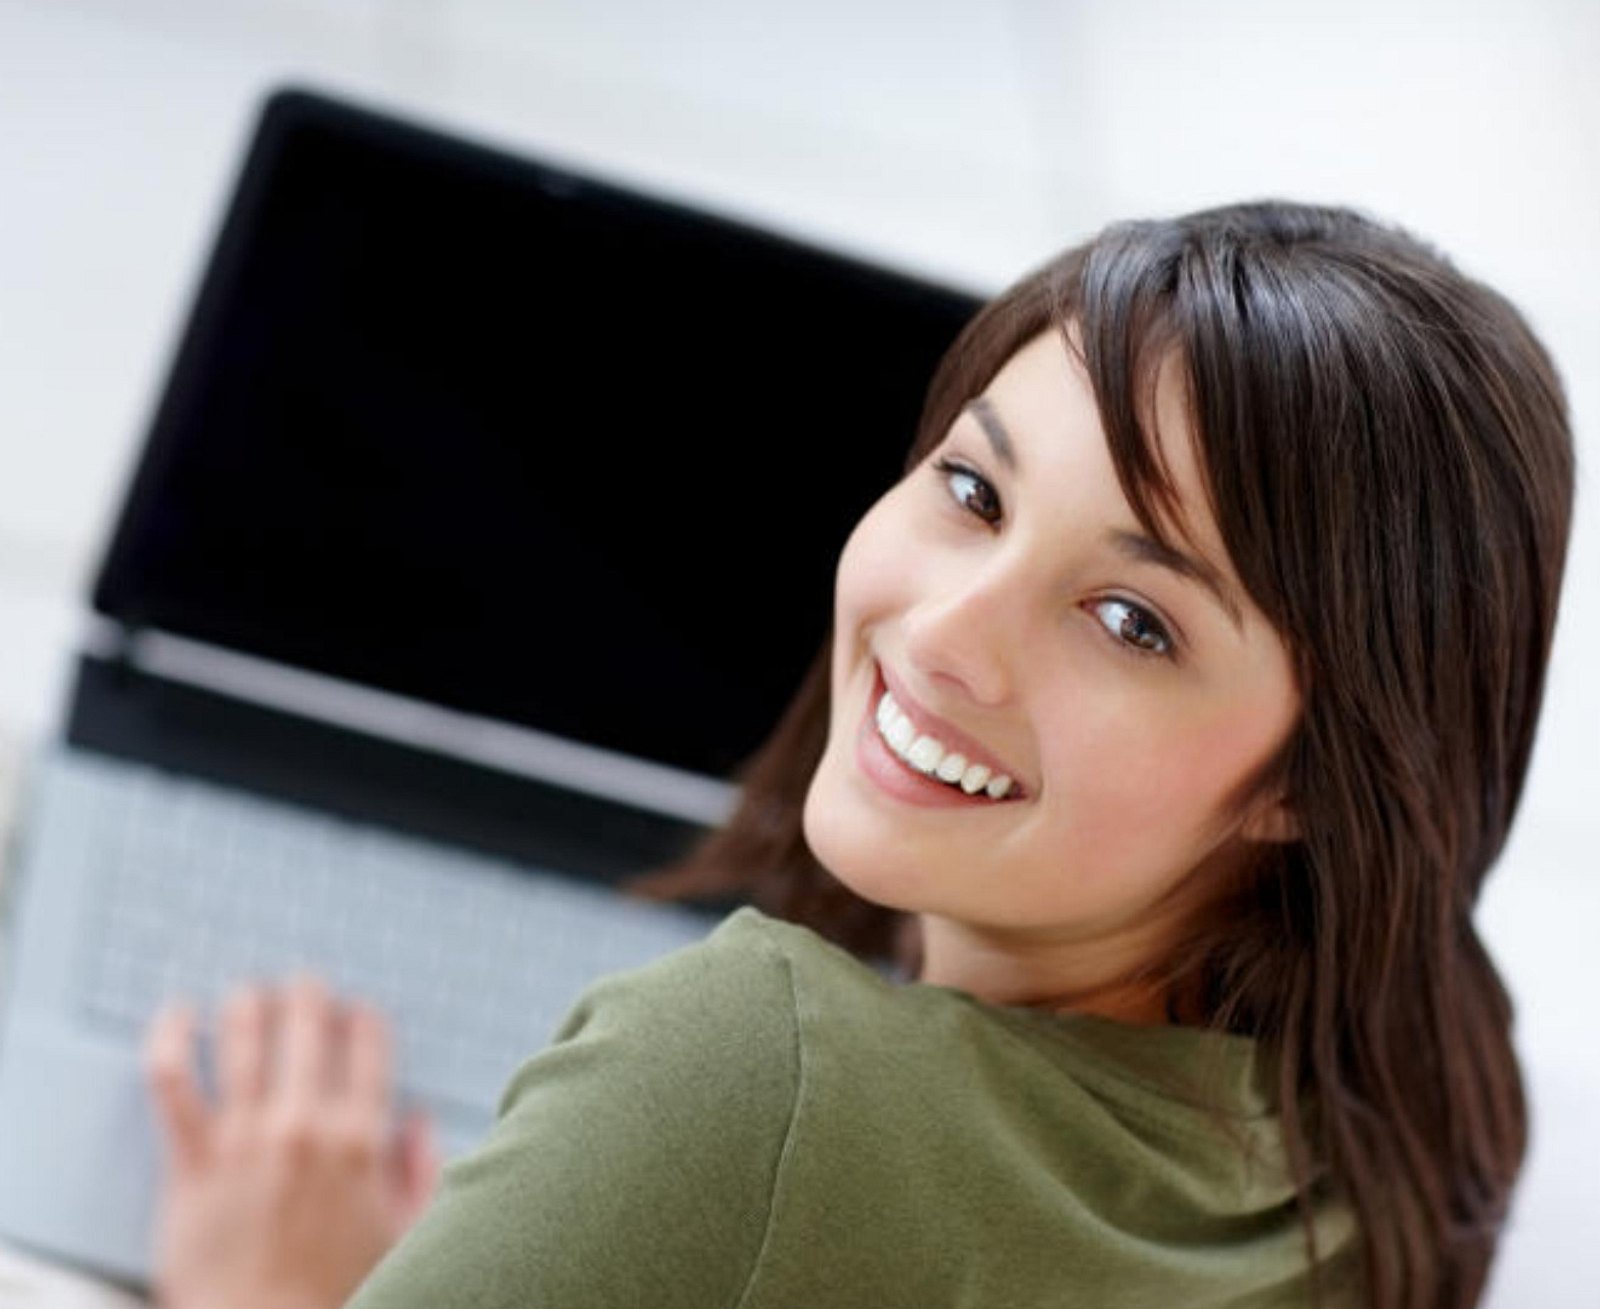 Интернет какой никакой. Компьютерные девушки. Девушка с ноутбуком. Женщина с компьютером. Женщина за компьютером улыбается.